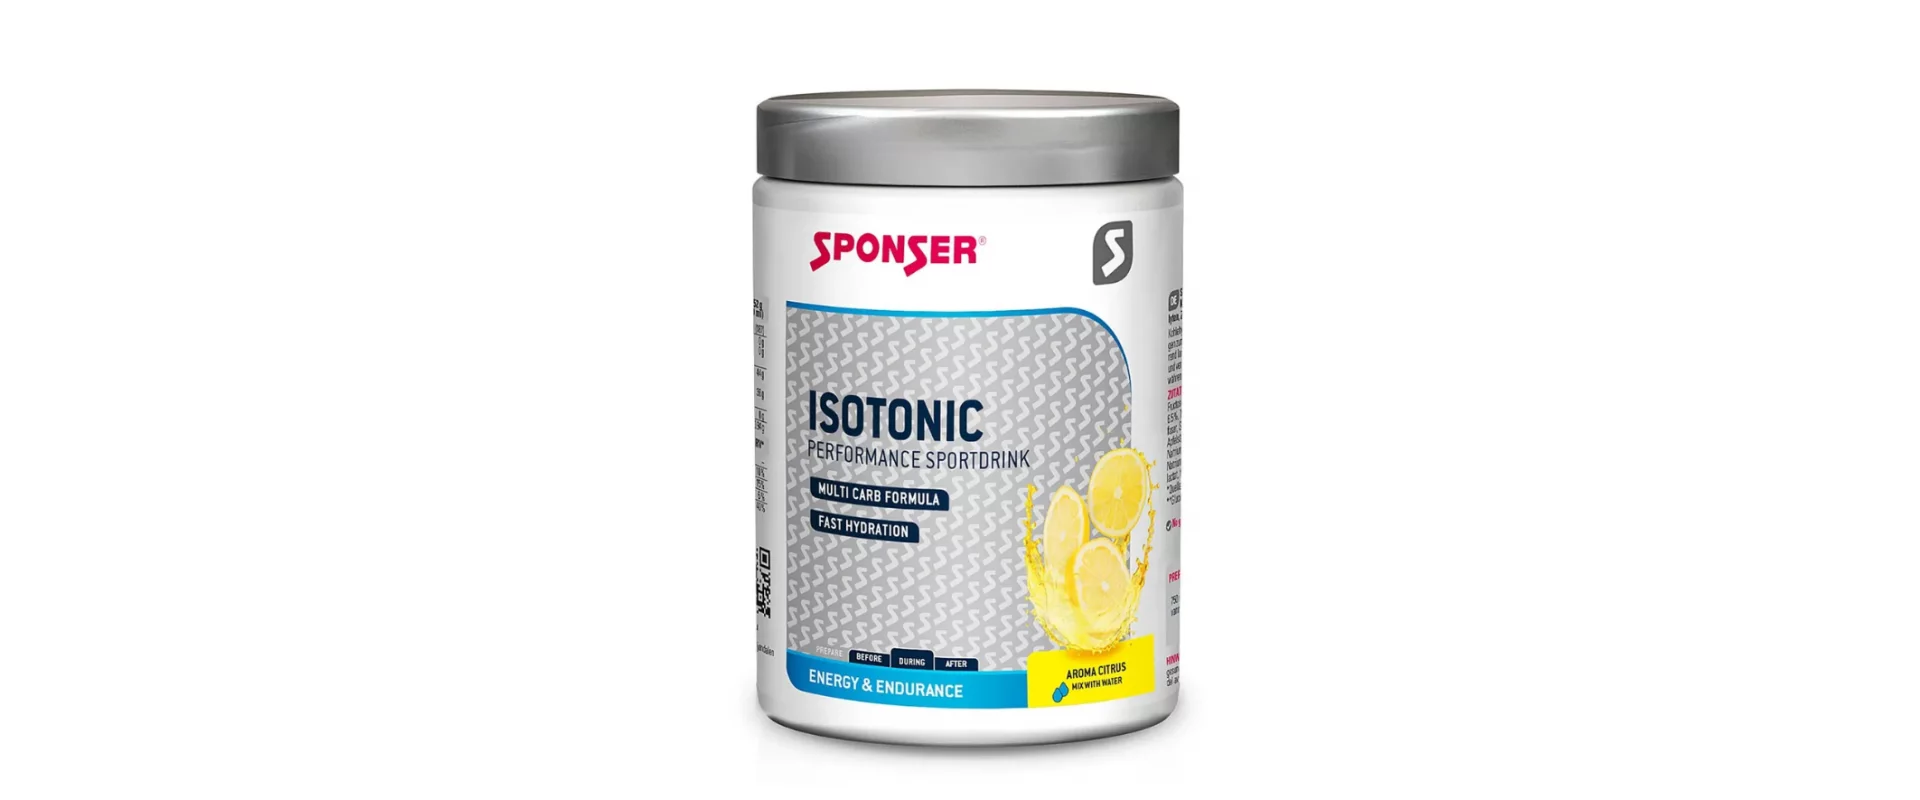 Sponser Isotonic вкус Цитрус / Изотоник (500g)